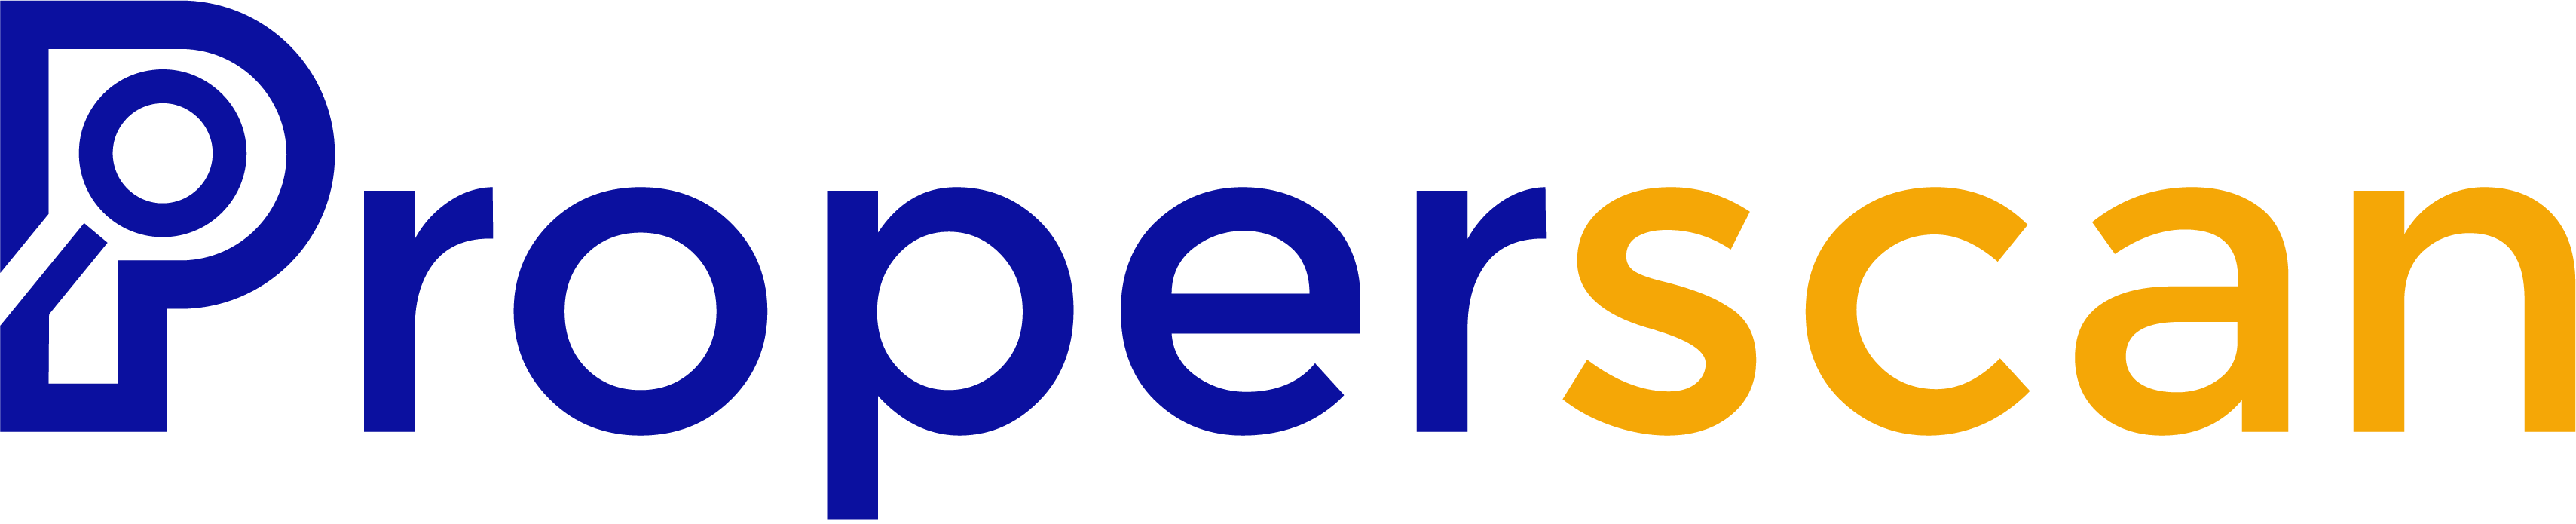 properscan logo variations 03